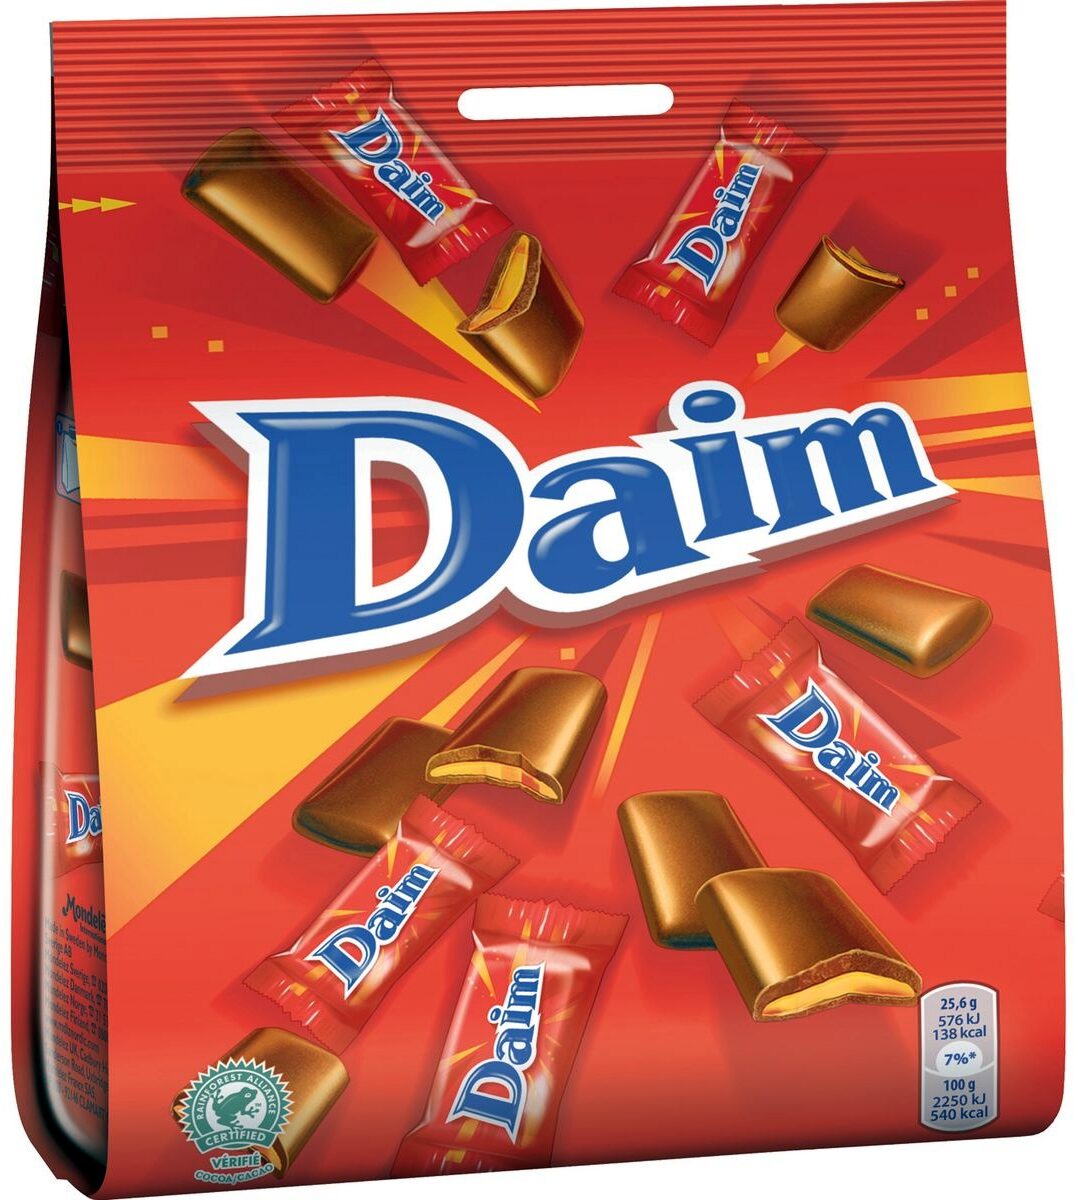 Daim Bar - Product